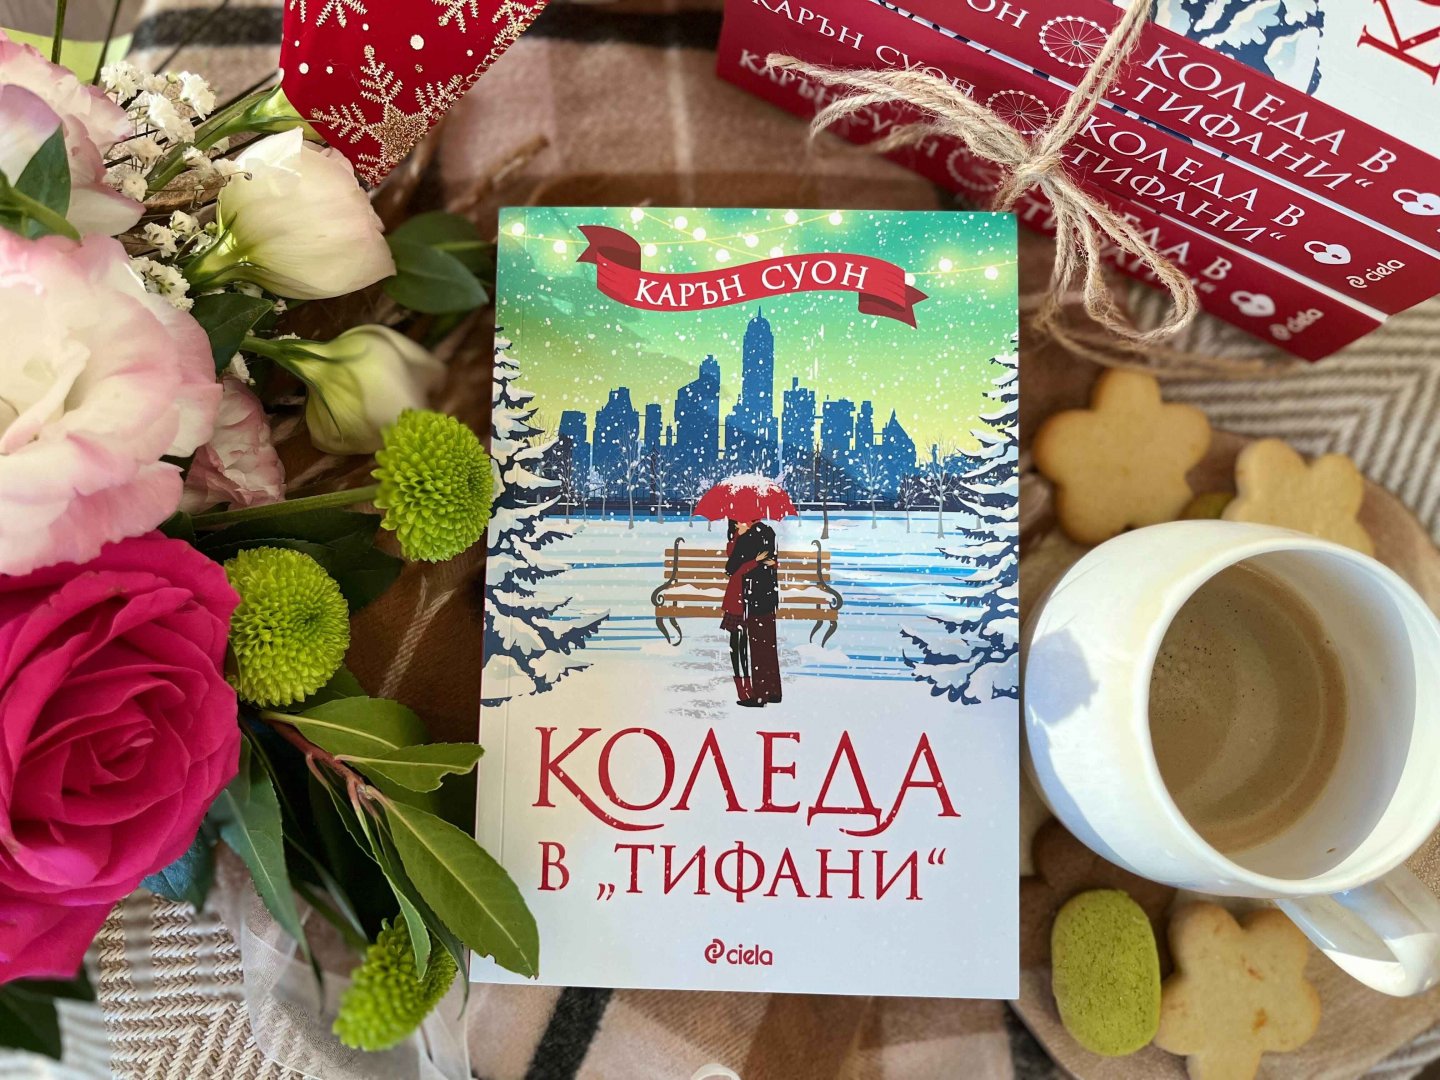 Коледа в Тифани е най-обичаният роман на Карън Суон